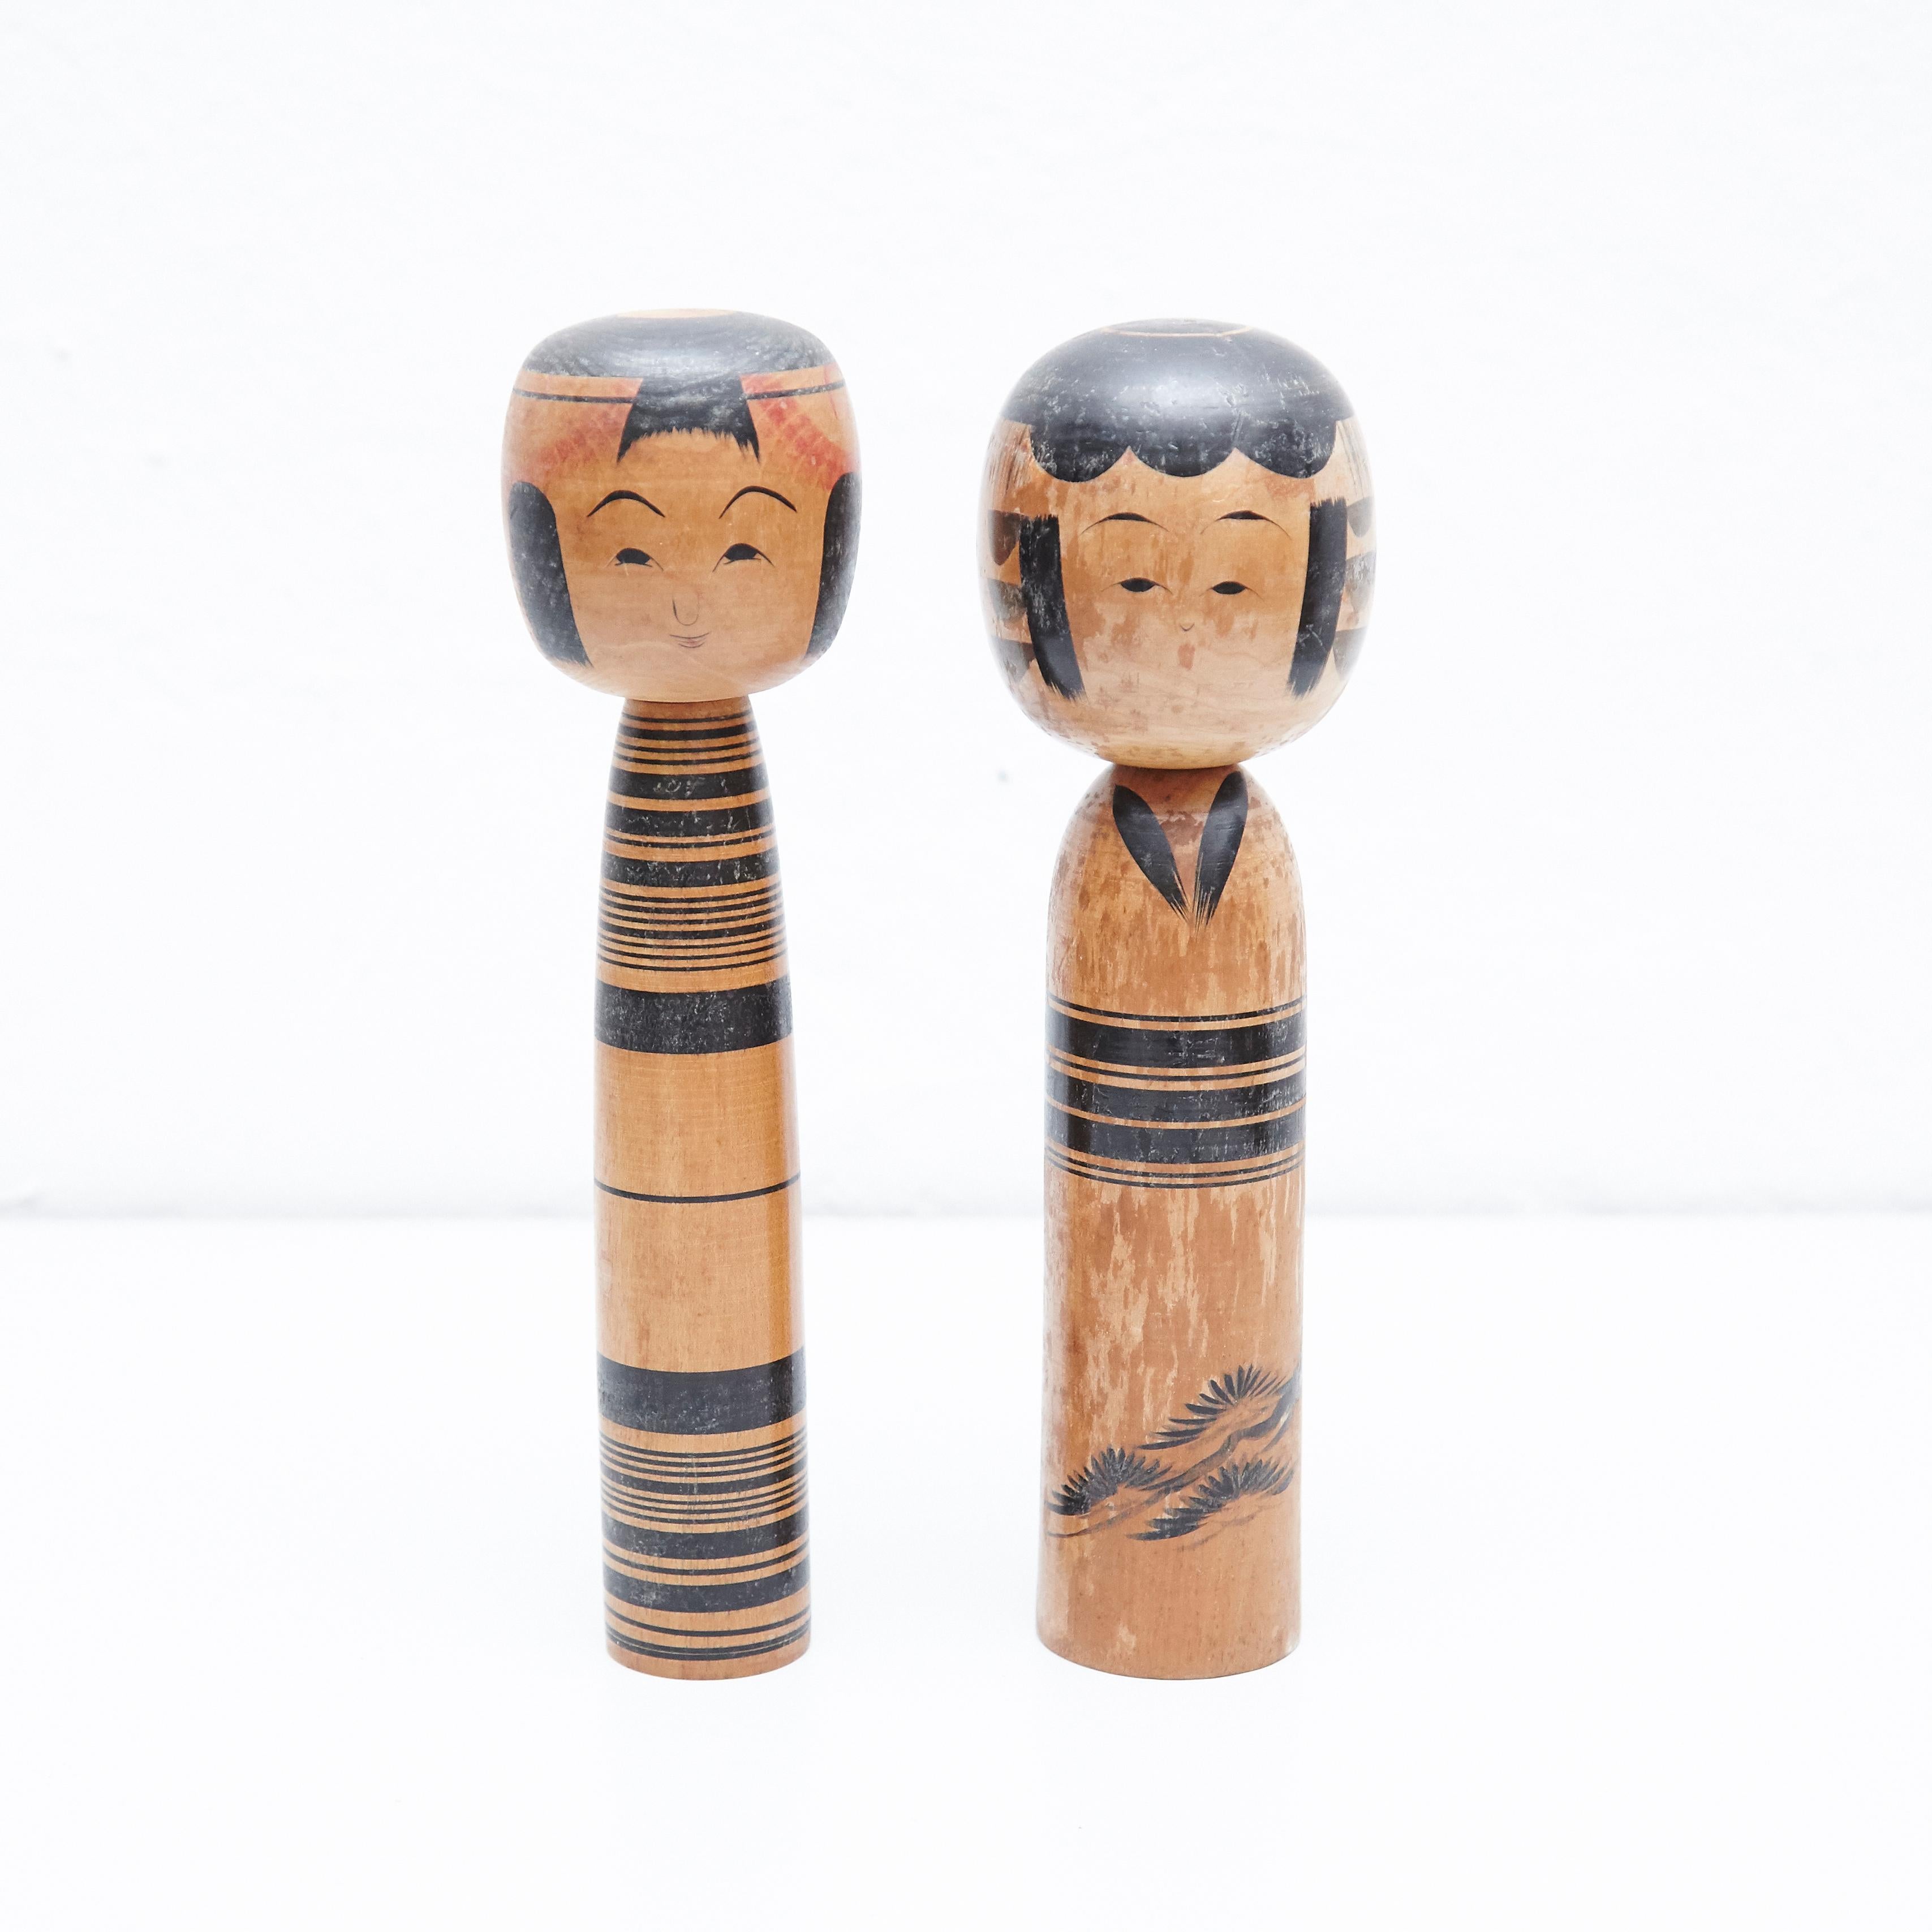 Japanische Puppen, Kokeshi genannt, aus dem frühen 20. Jahrhundert.
Provenienz aus dem nördlichen Japan.
Satz von 2.

Maßnahmen: 

24.5 x 7 cm
25 x 6.5 cm


Handgefertigt von japanischen Kunsthandwerkern aus Holz. Sie haben einen einfachen